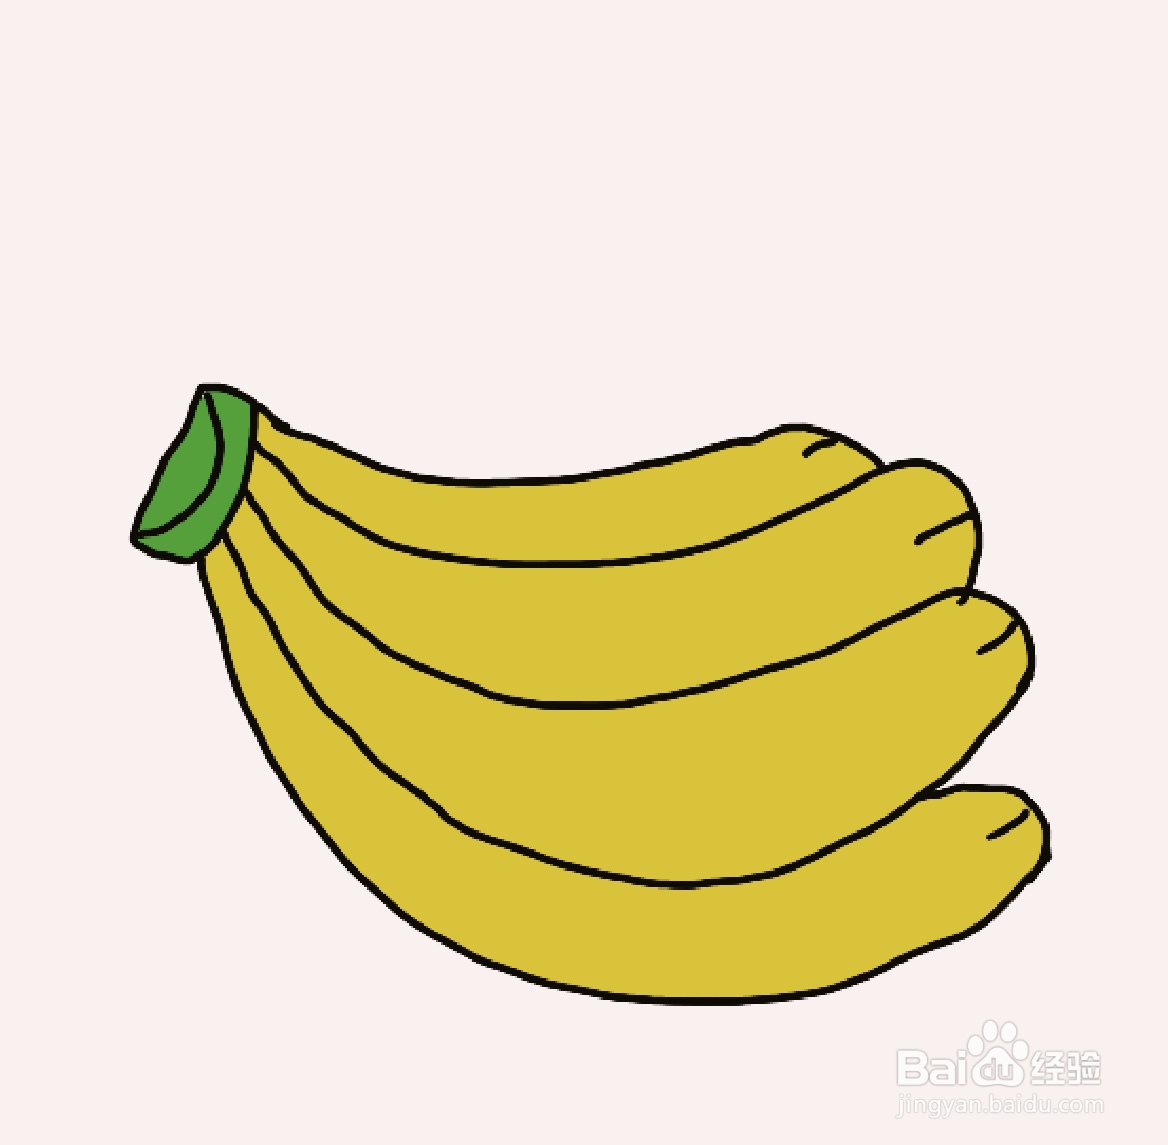 怎么画简笔画香蕉?